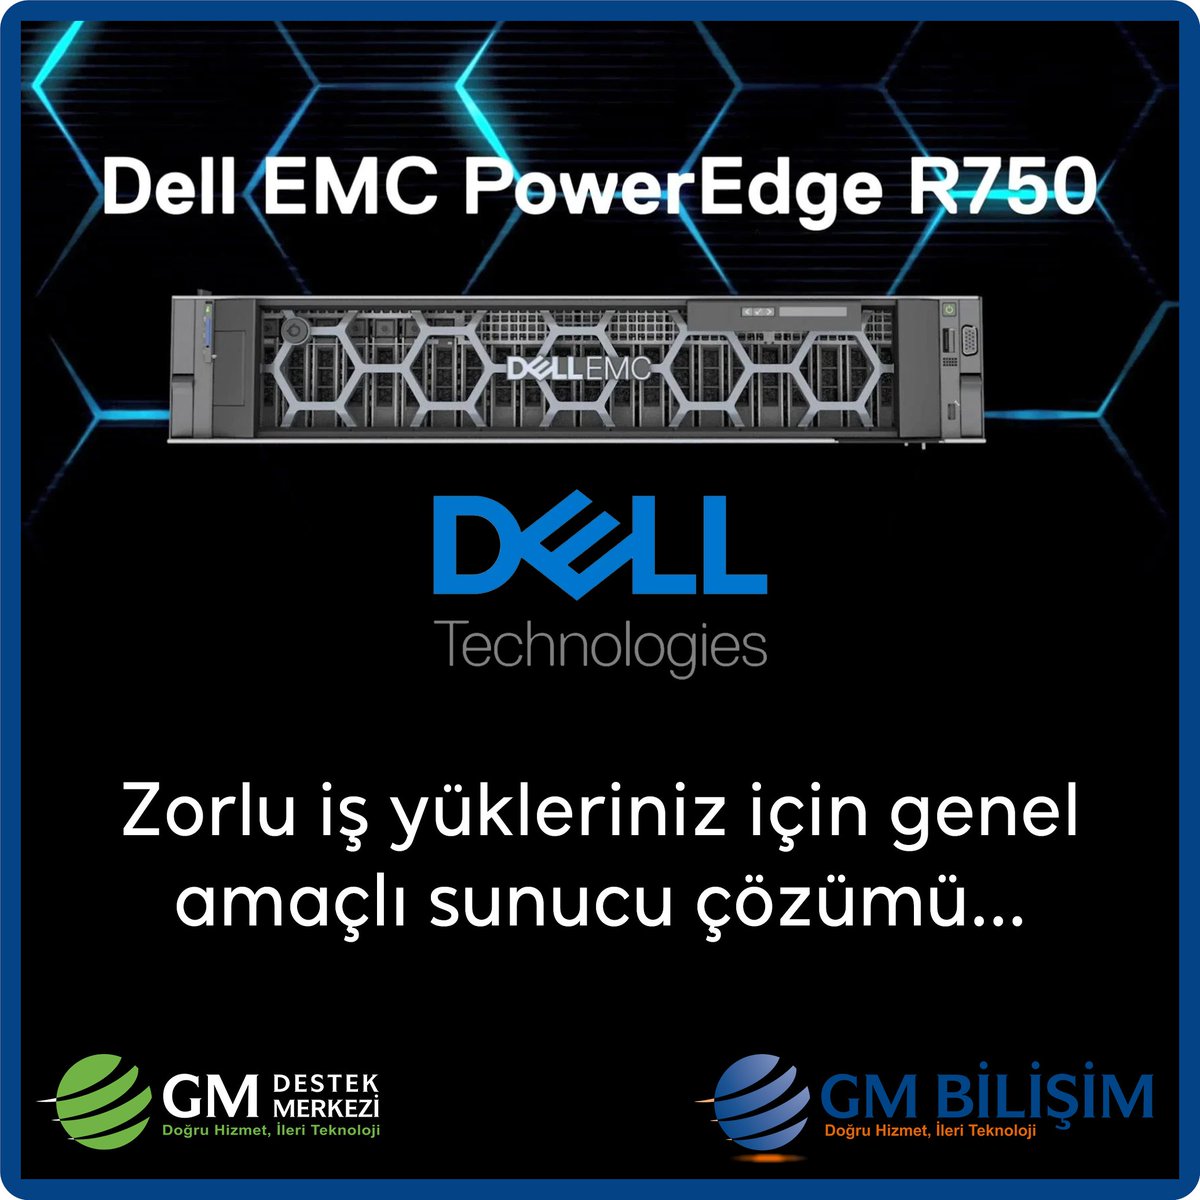 Dell EMC PowerEdge R750 Serisi sunucular, GM Bilişim farkı ile... #Dell #PowerEdge #Türkiye #R750 #Sunucu #Server #KOBİ